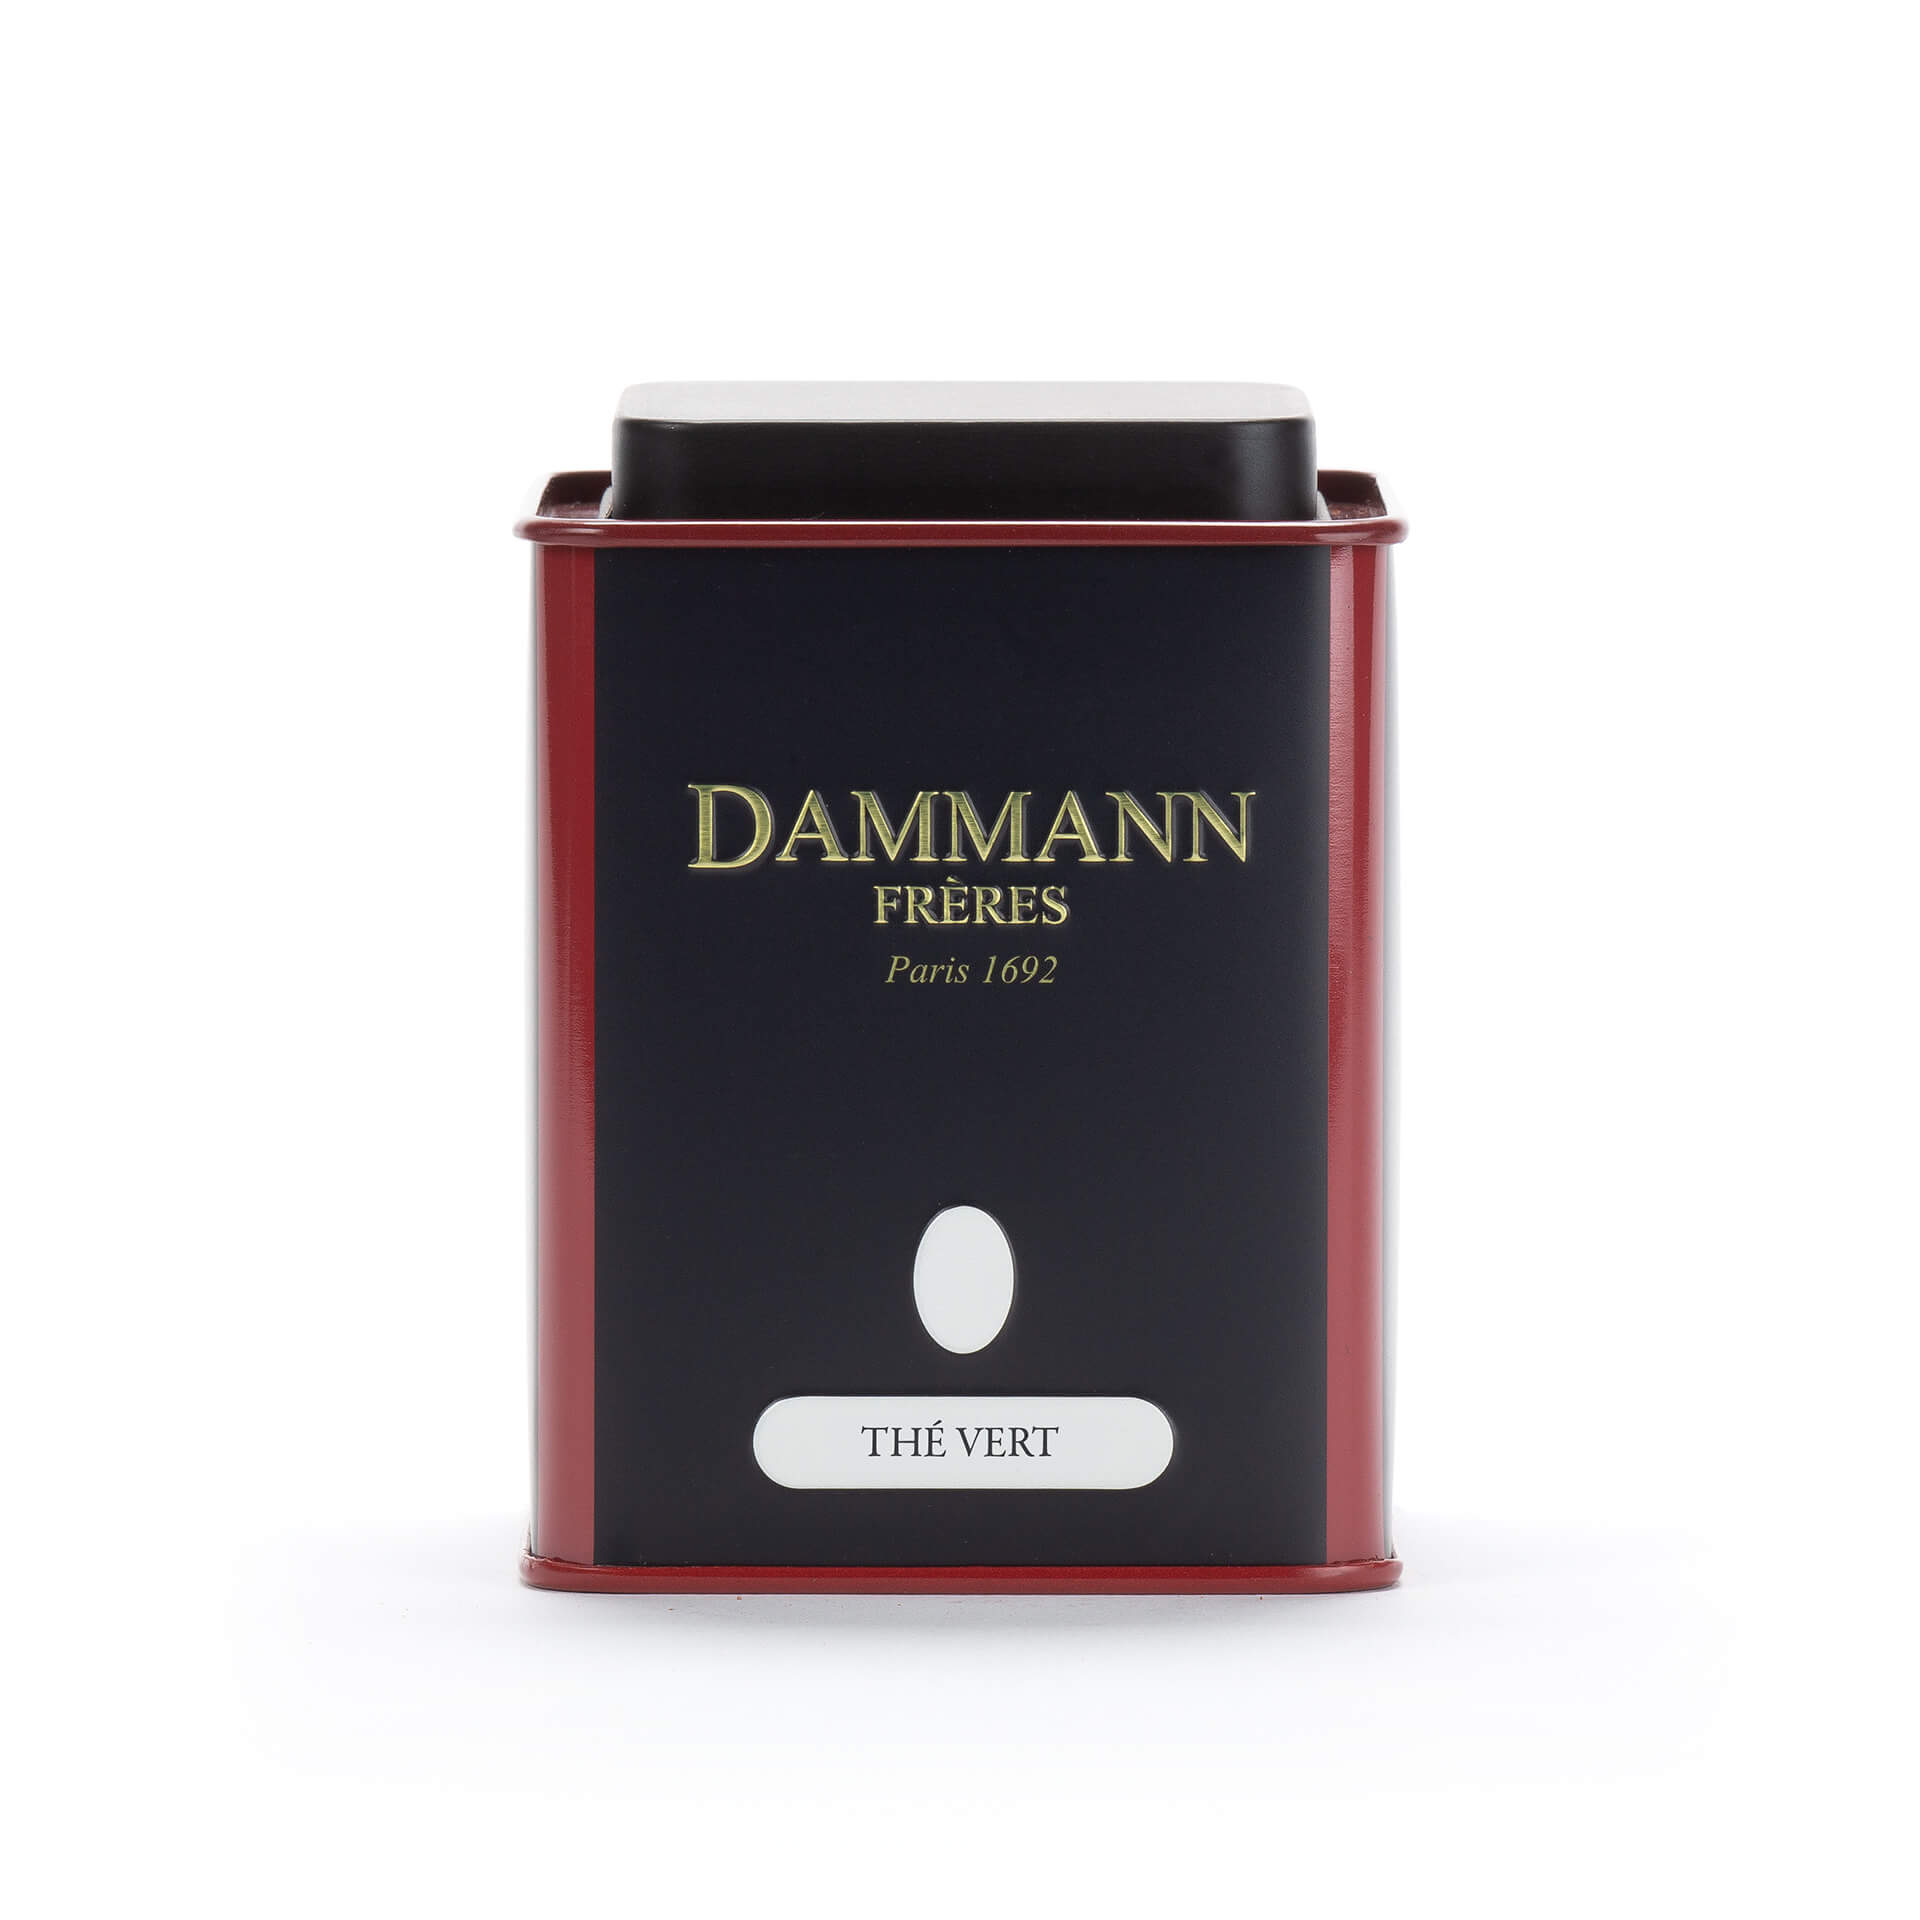 Μεταλλικό δοχείο Dammann αποθήκευσης πράσινου τσαγιού 100g, Αποθήκευση / Δοχεία, 18-20-1807